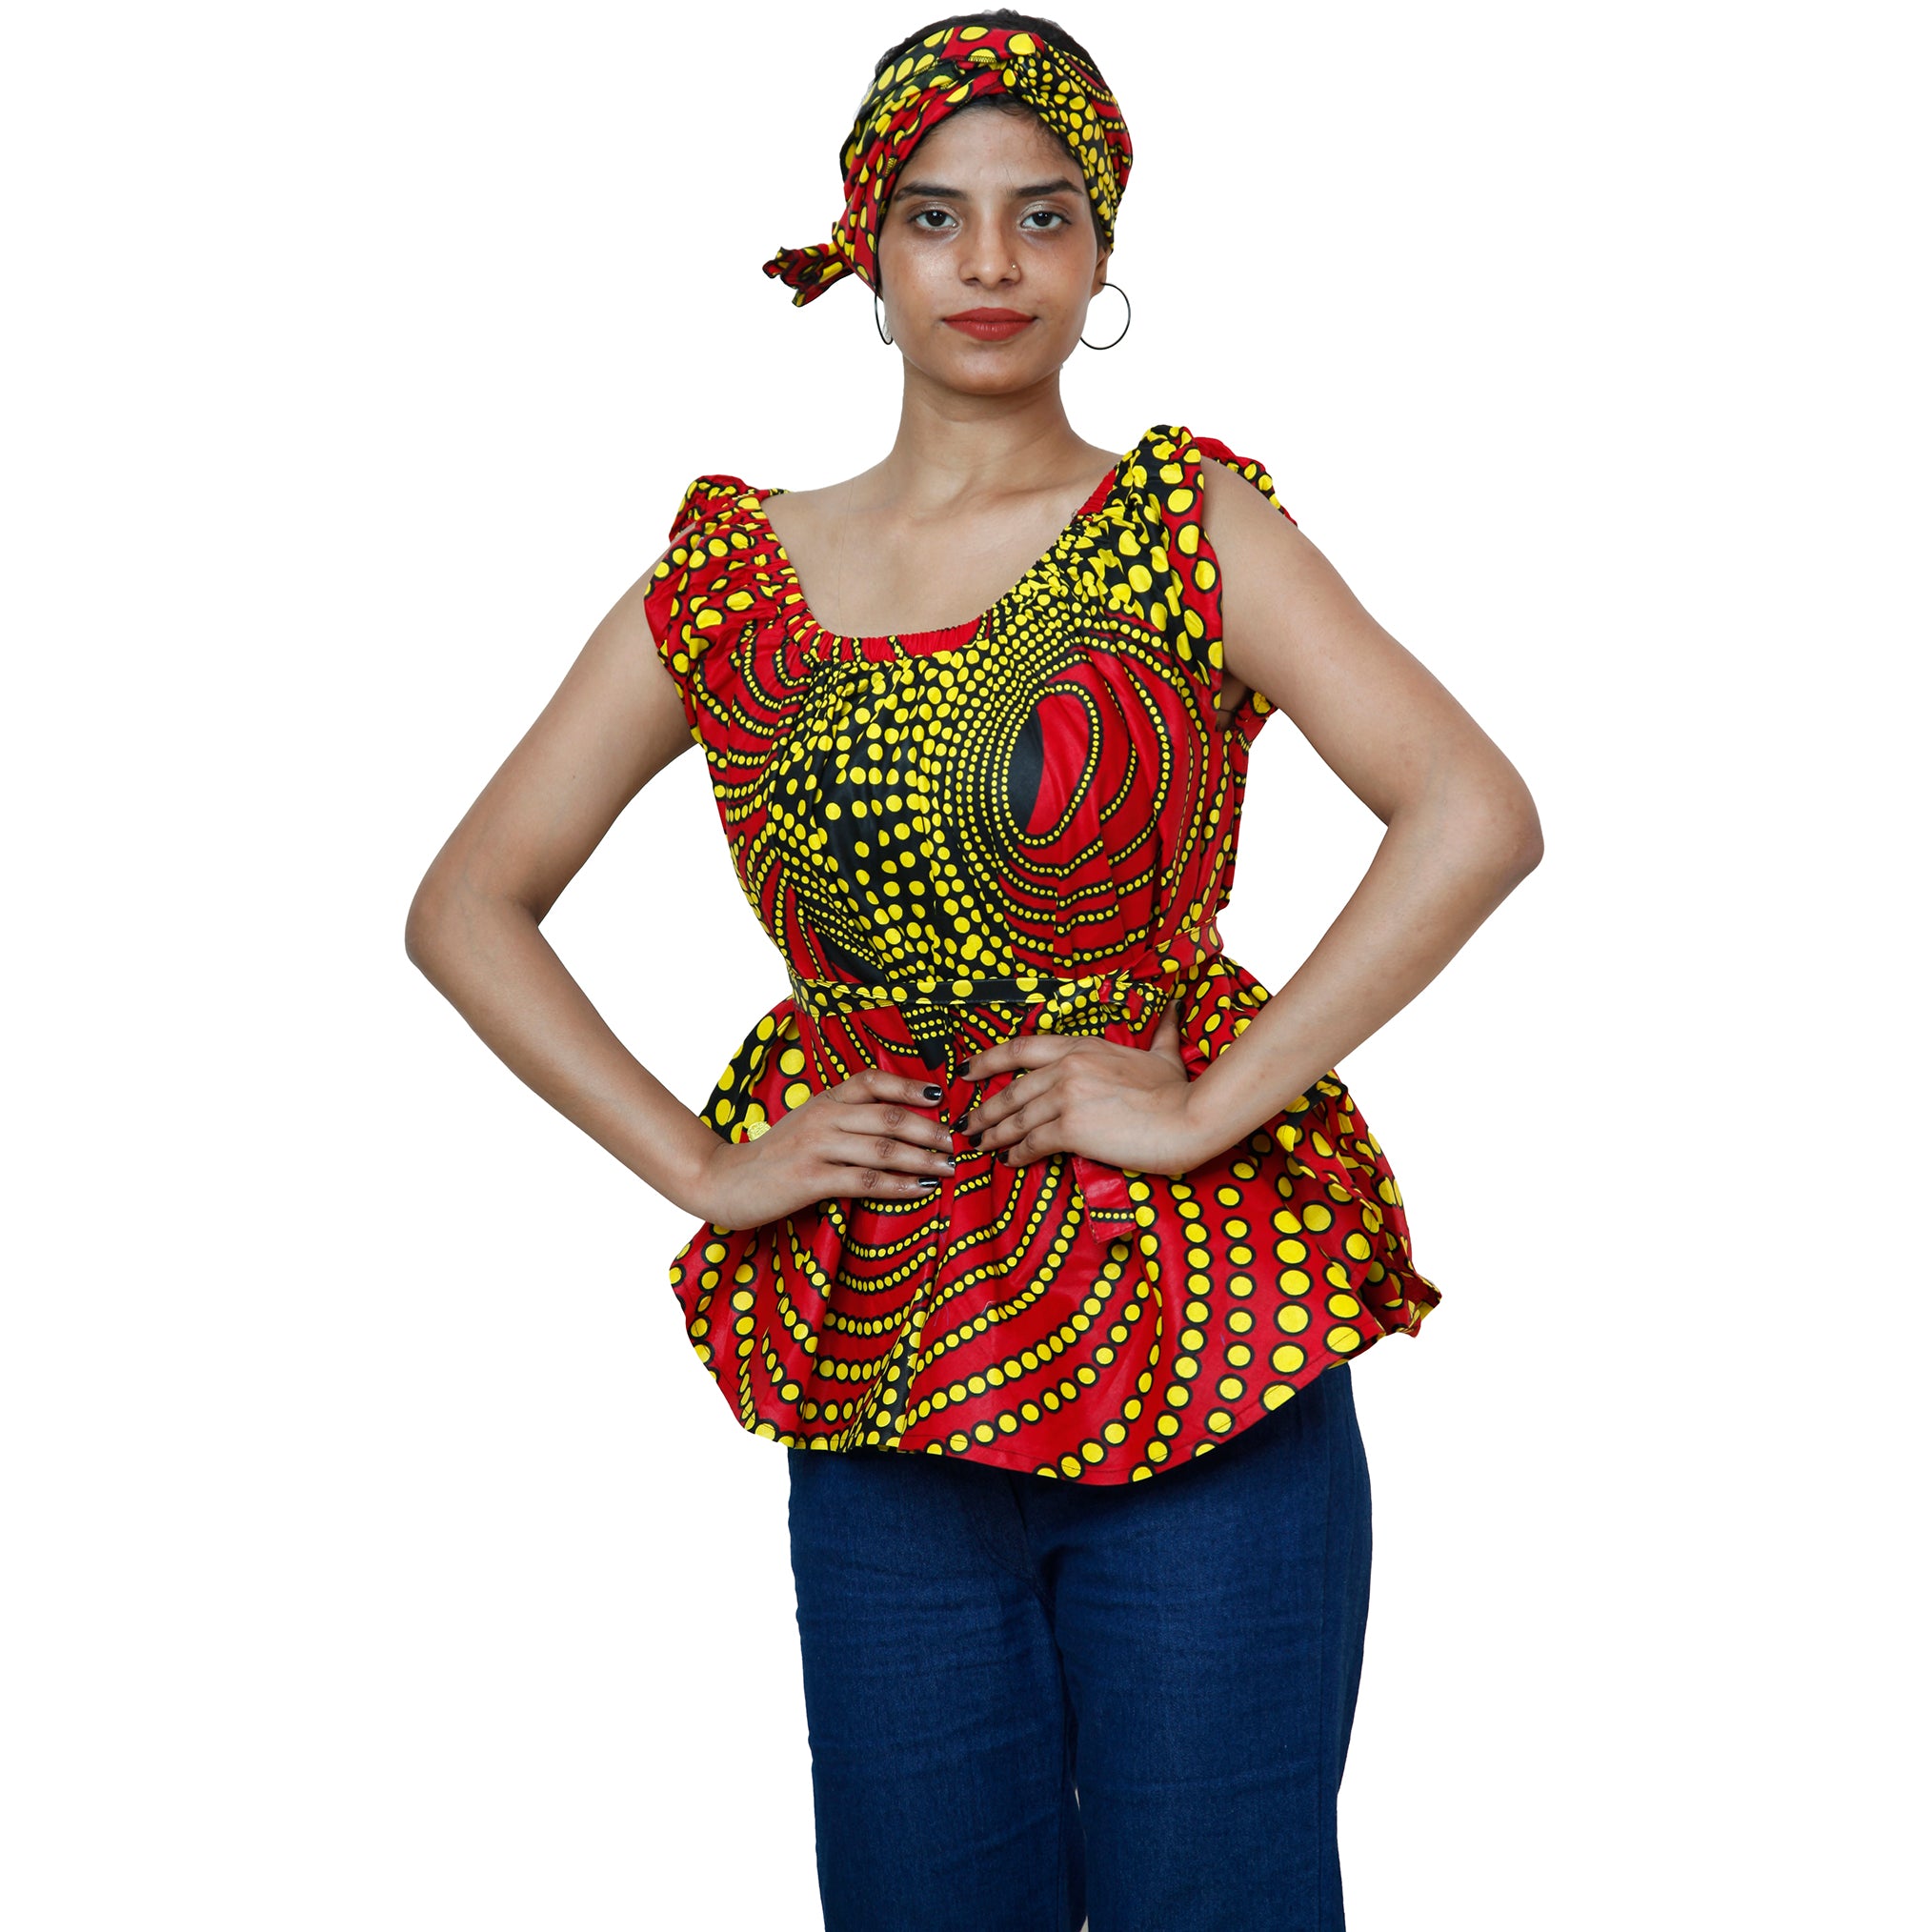 Women's African Printed Short Sleeve Peplum Top FI-2033